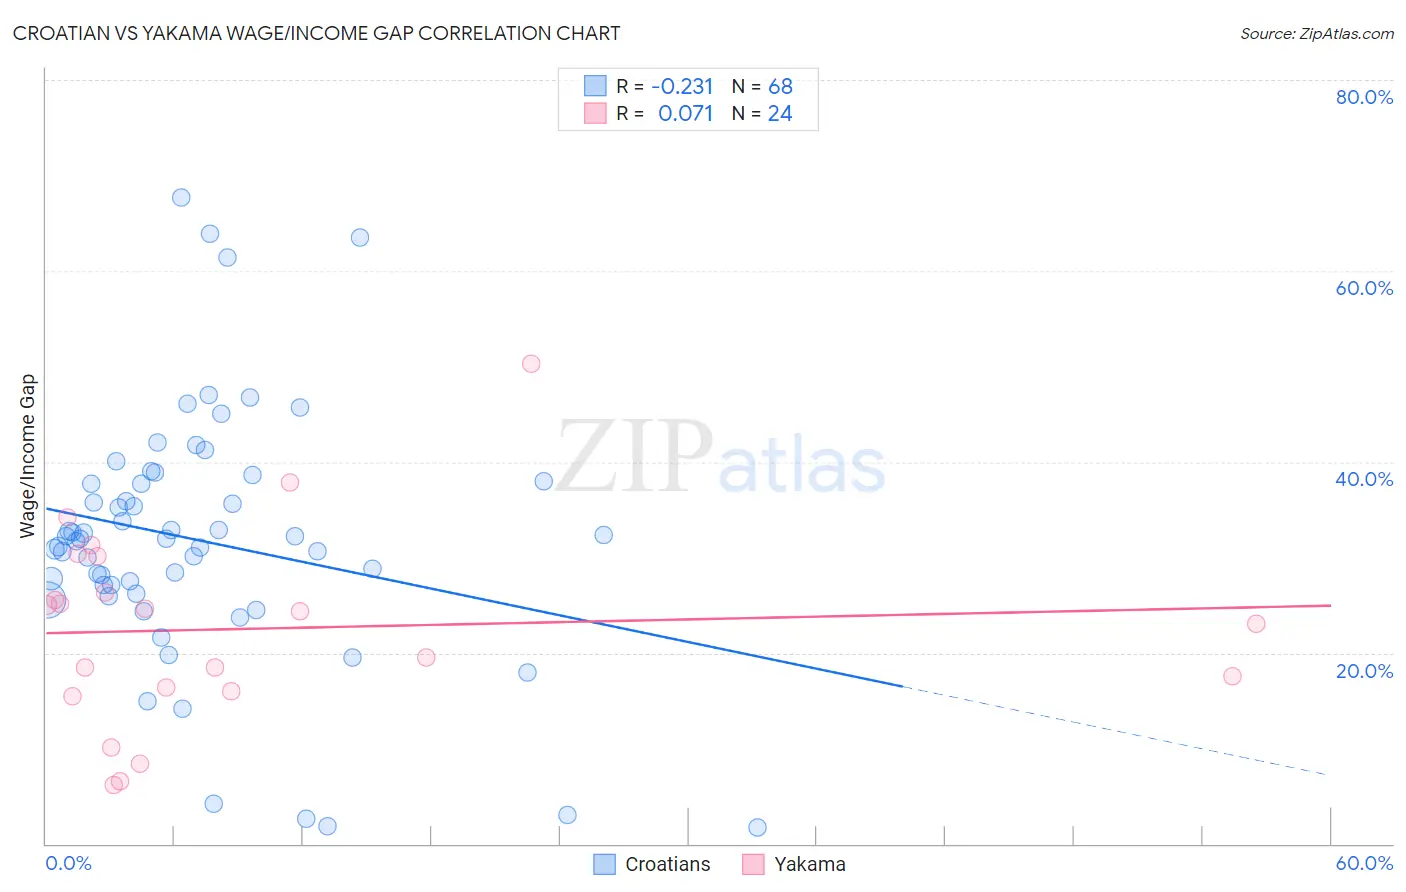 Croatian vs Yakama Wage/Income Gap